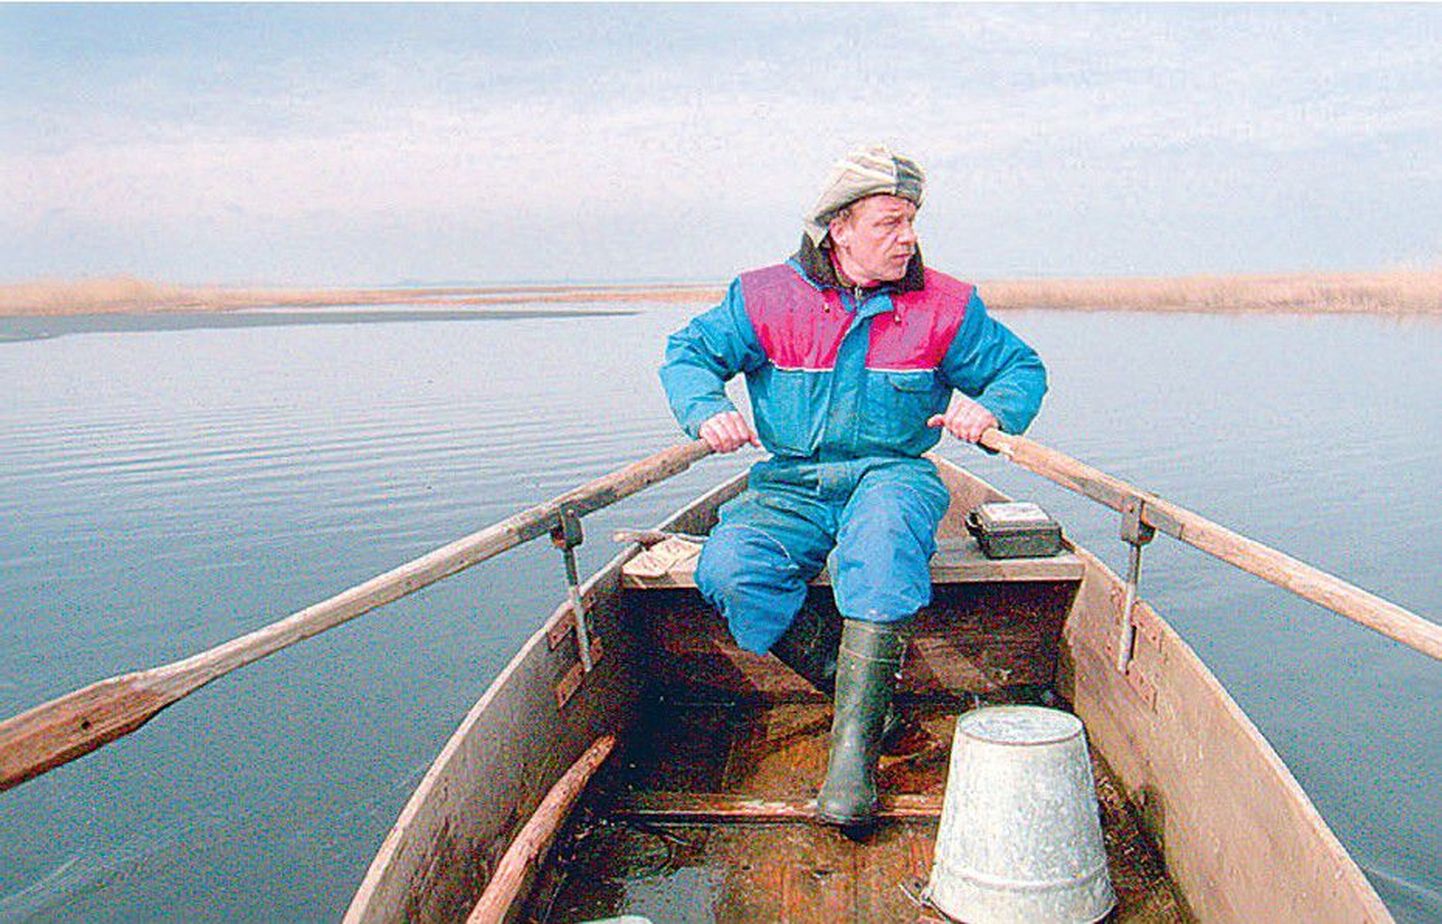 Eesti Rahva Muuseumile saadetud fotodel on jäädvustatud ka kaluri päev Peipsi järve Pedaspea lahel. Pildil sõuab mees võrke vette laskma.